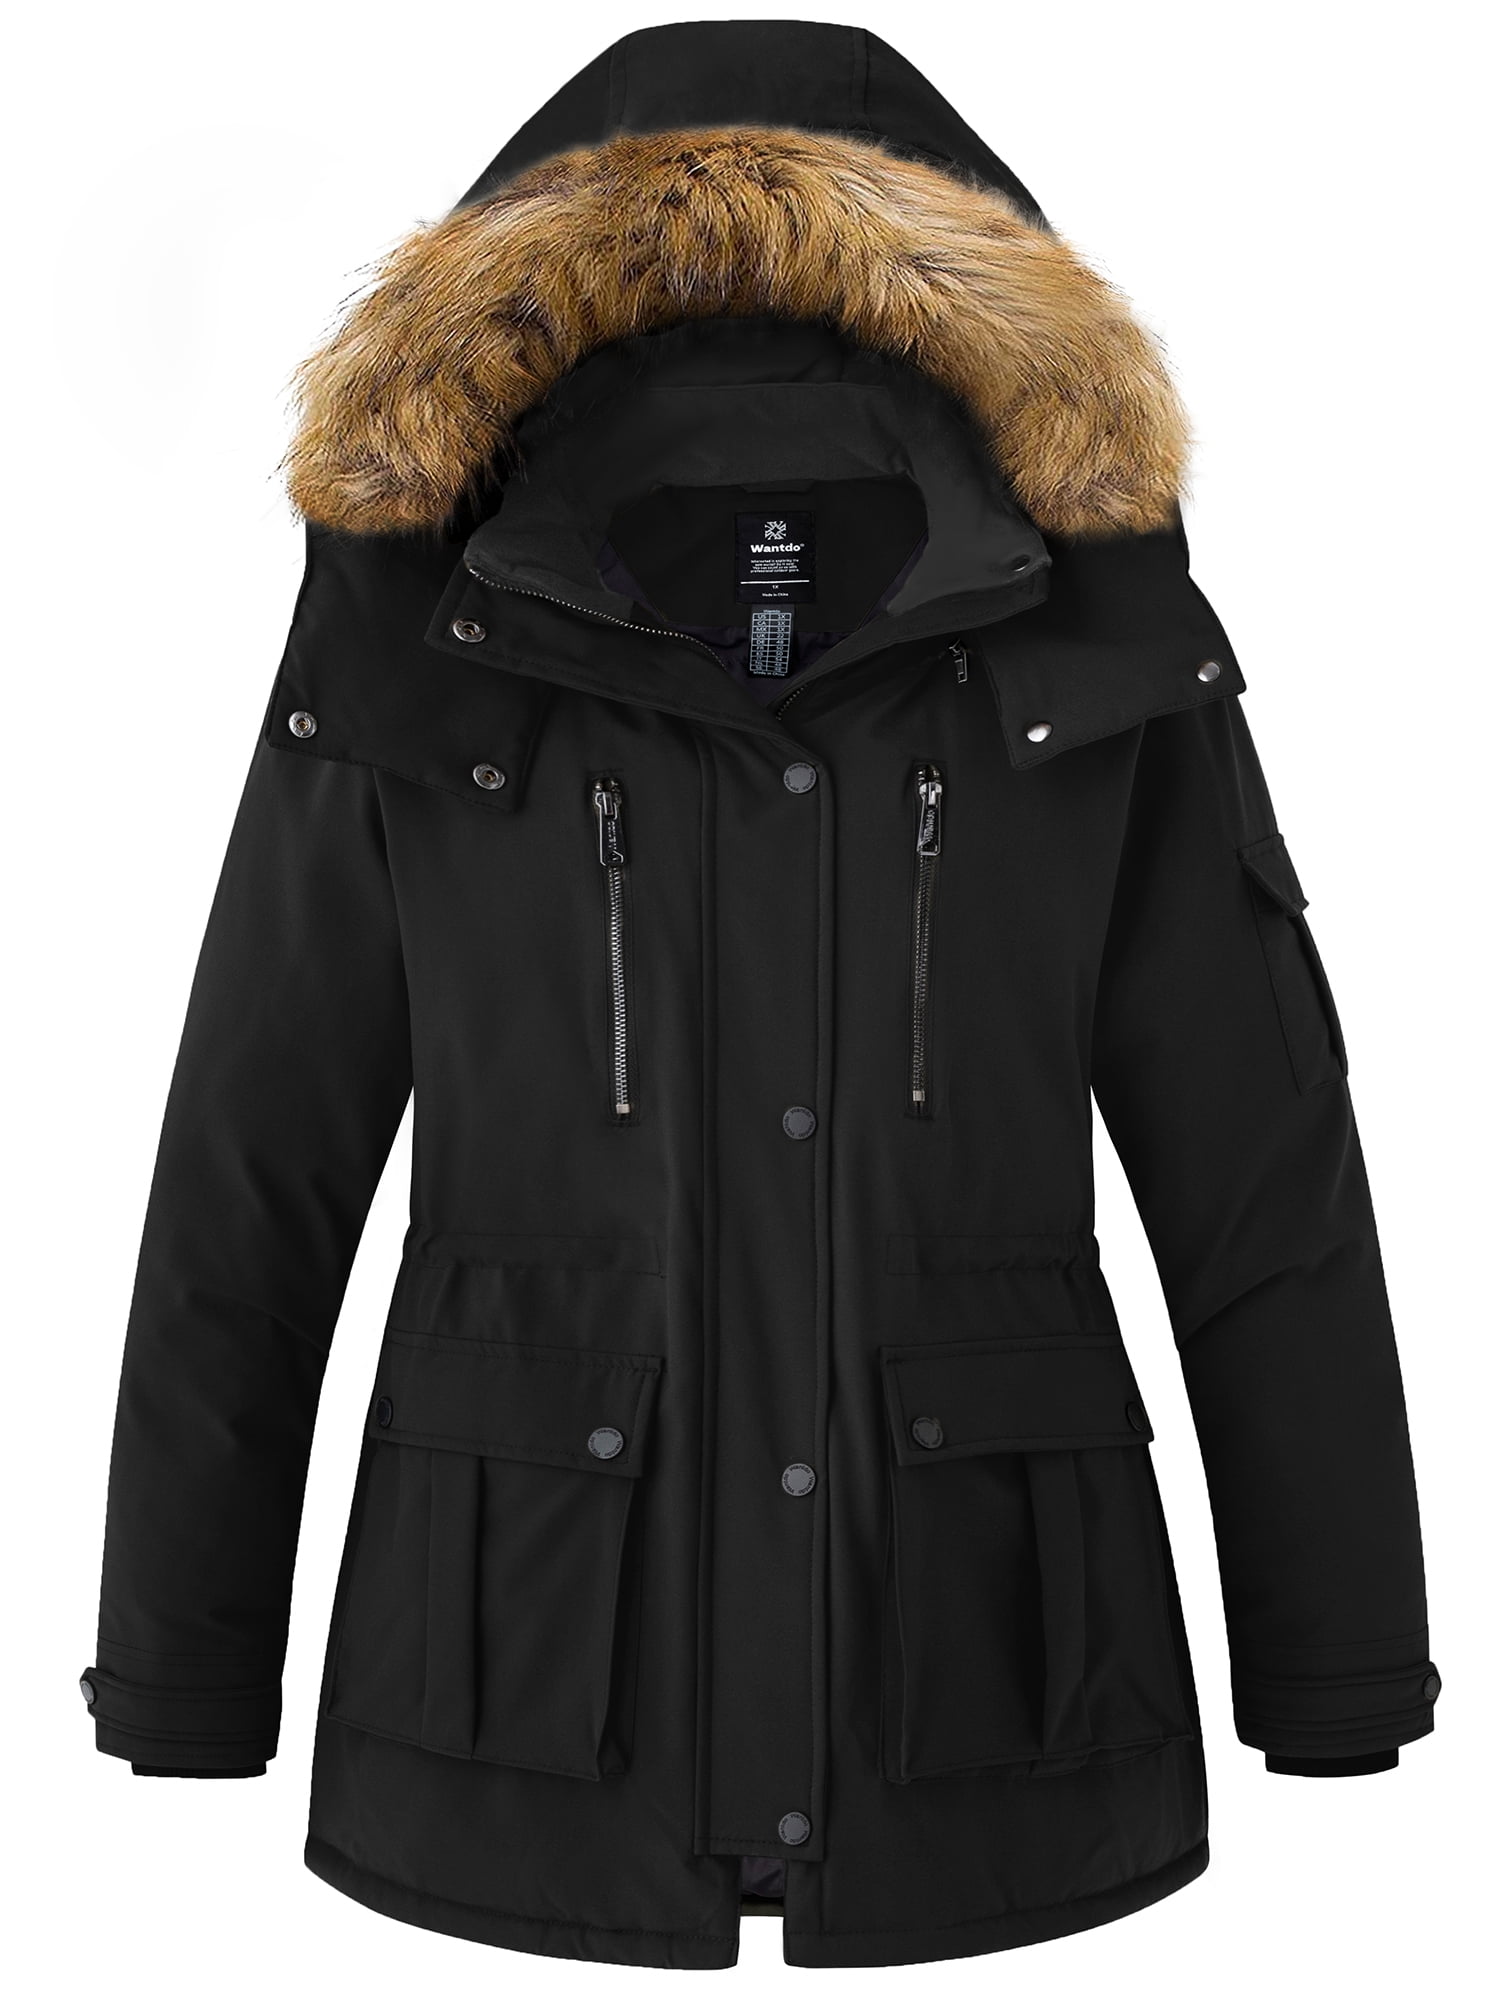 Wantdo Women's Plus Size Coat Warm Puffer Jacket Parka with Faux Fur ...